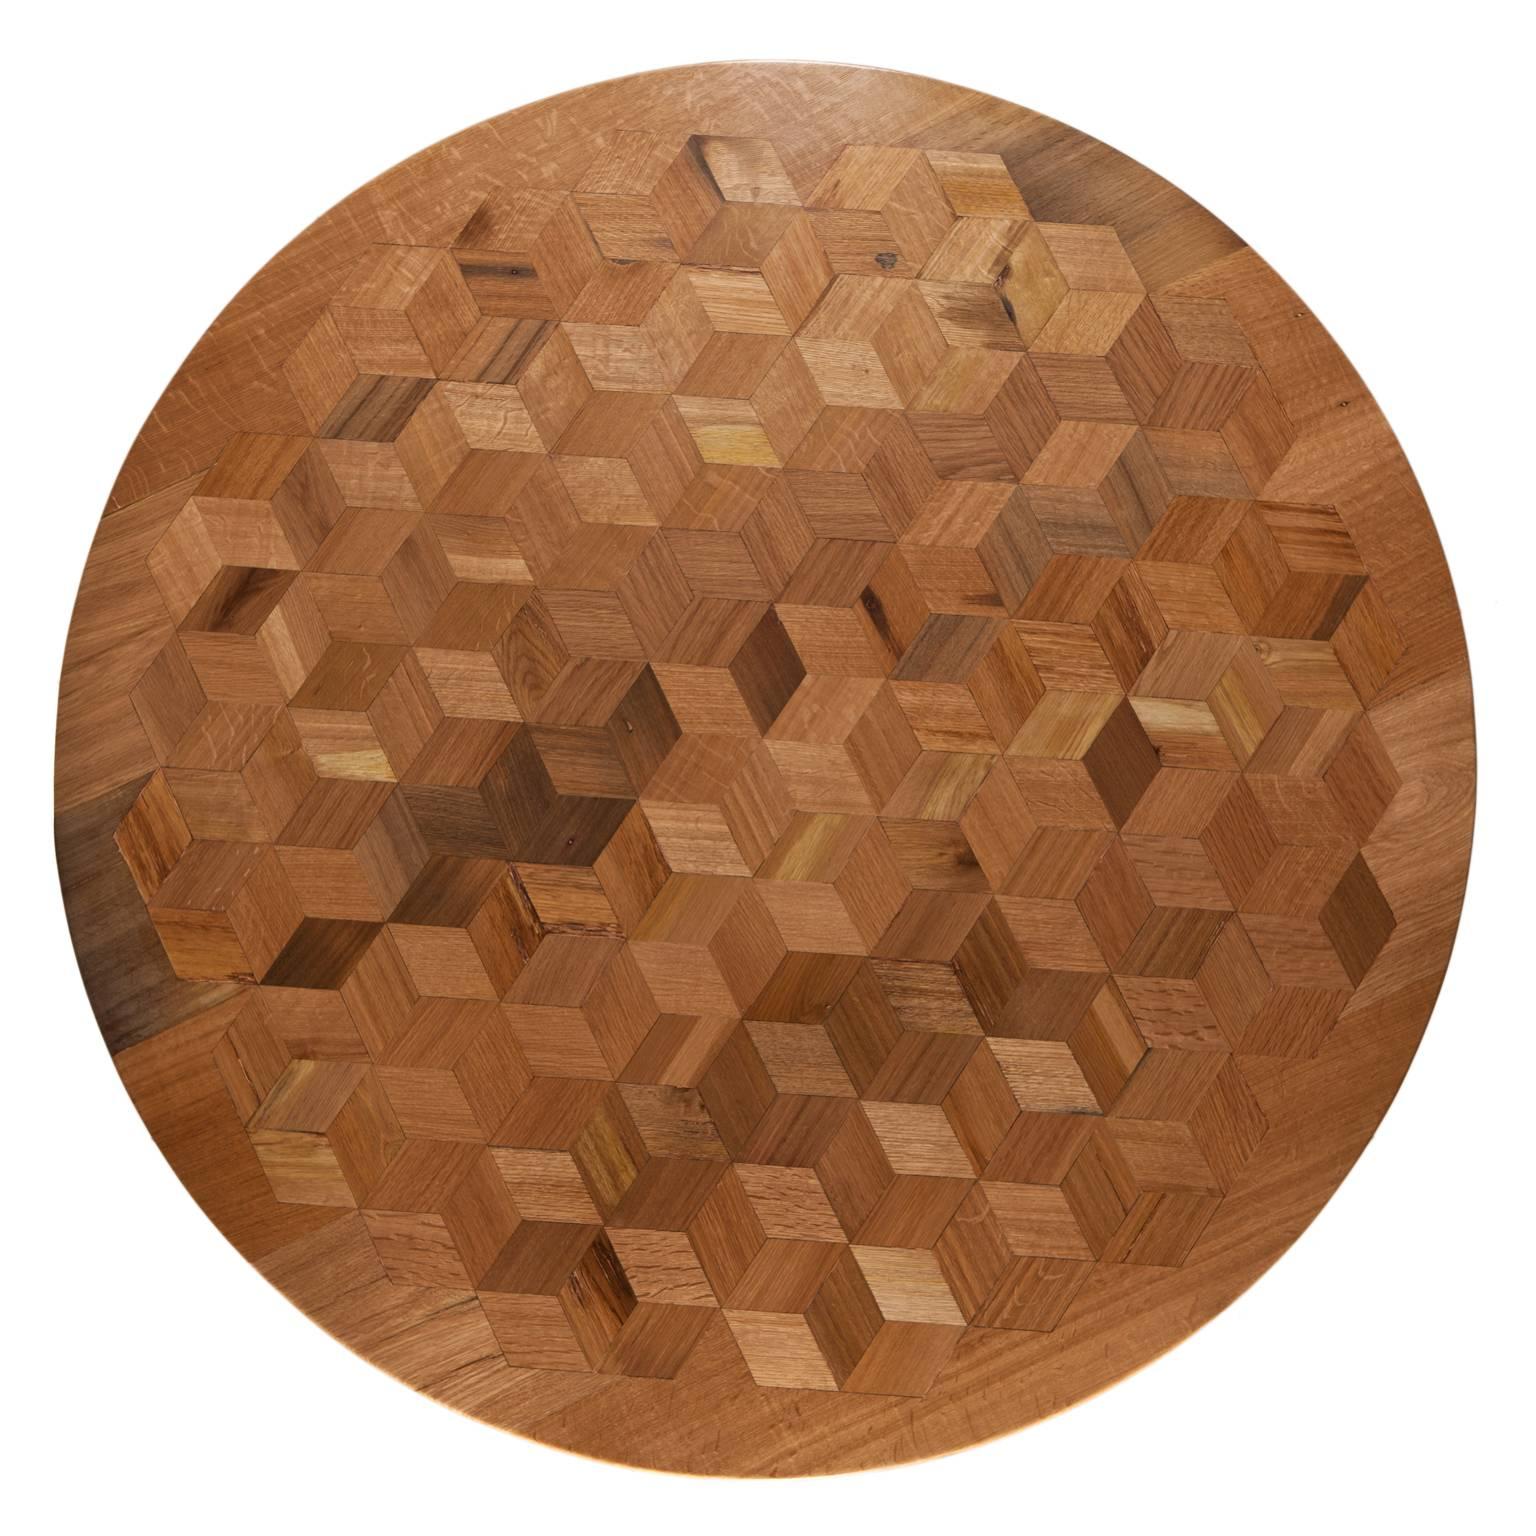 Inspirés par le travail d'Escher, nous voulons prouver avec Maurits qu'une table n'a pas besoin d'être antique pour être un témoignage impressionnant de savoir-faire.
Le plateau de table en marqueterie de chêne récupéré contient 222 rhombes